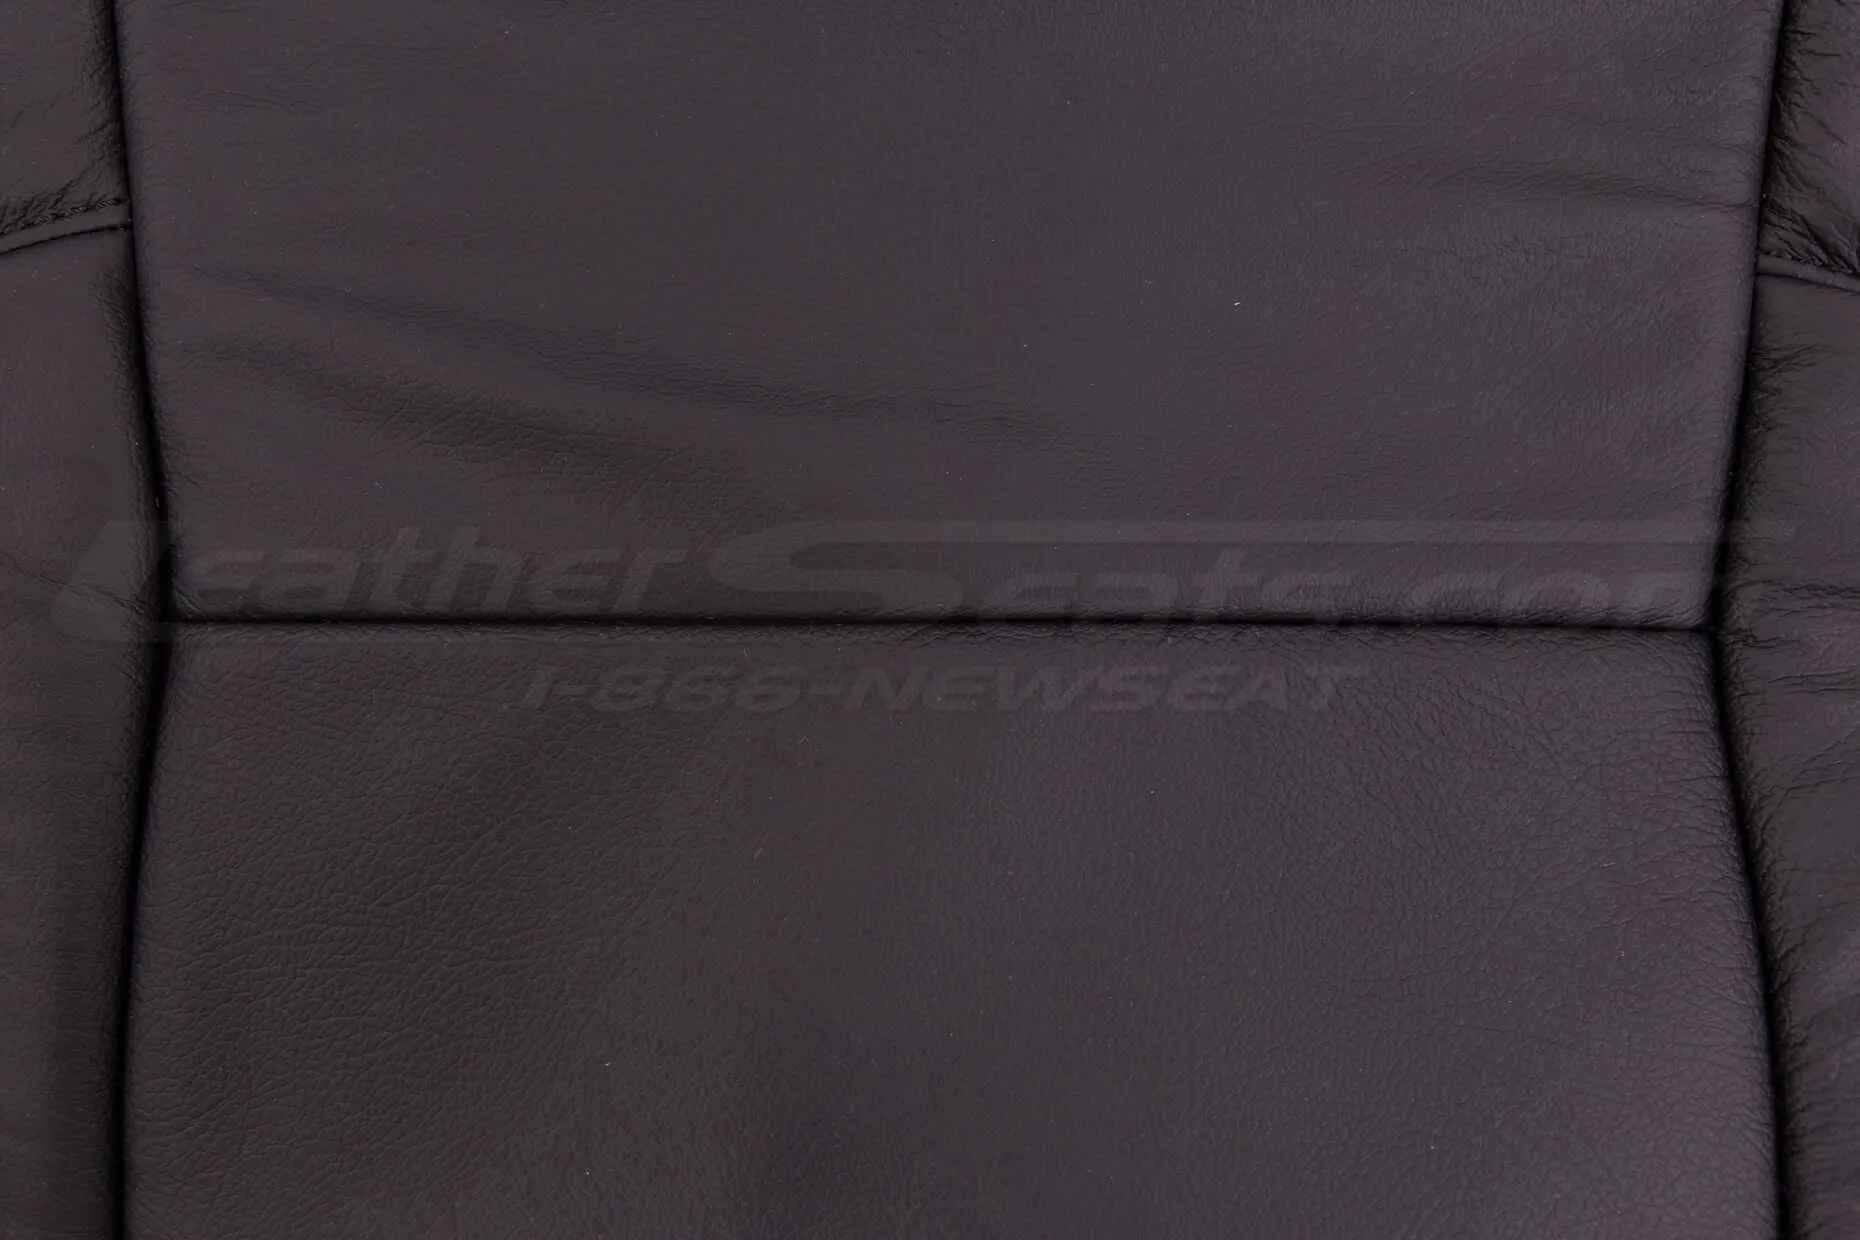 Toyota Highlander Leather Kit - Black - Backrest insert close-up